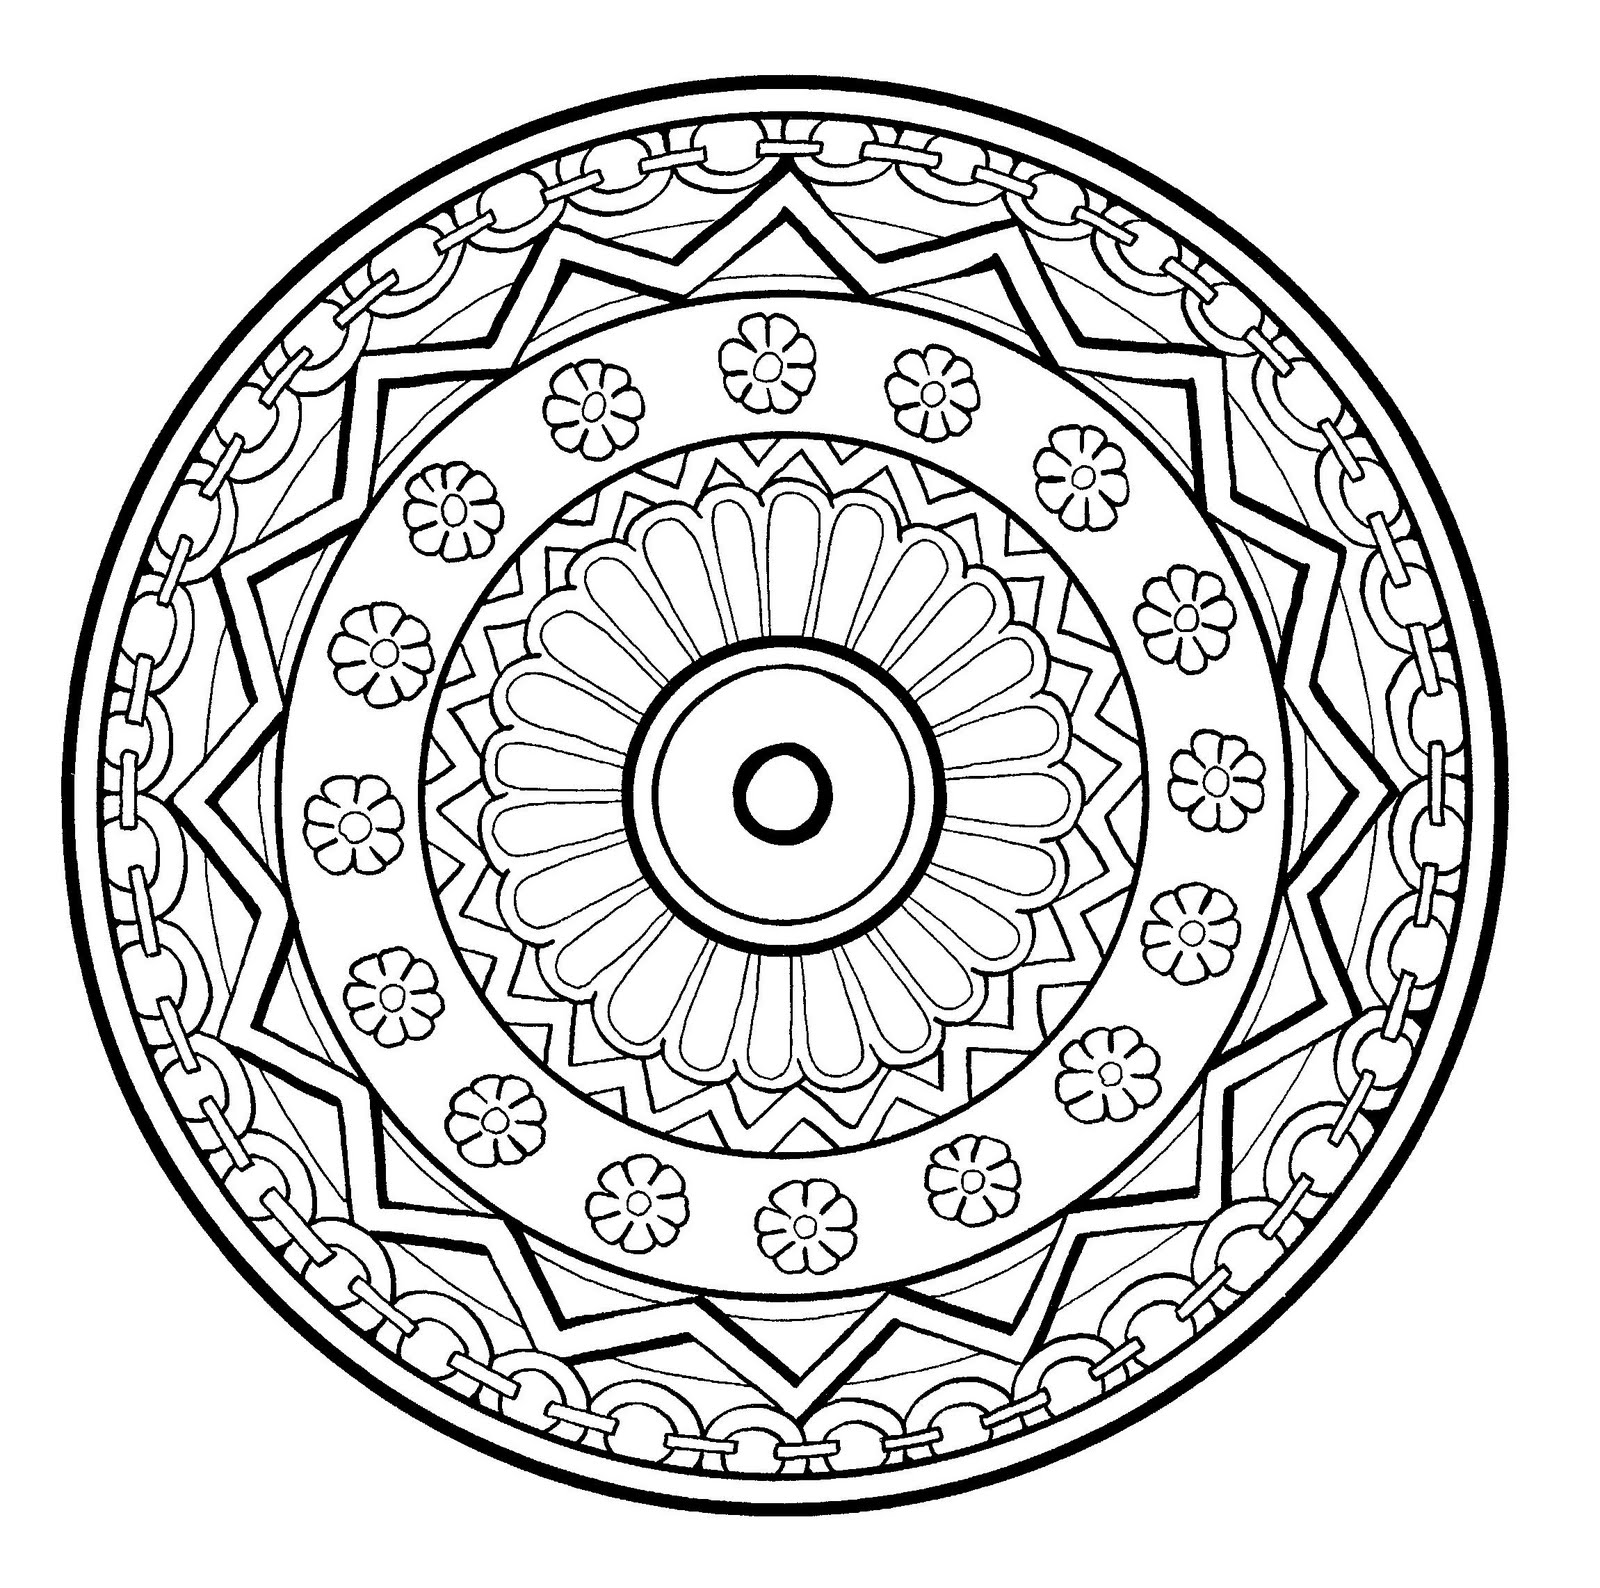 Superbo mandala a spirale, piuttosto fiorito, con diversi elementi come fiori, forme geometriche o catene tutt'intorno. Livello abbastanza normale.